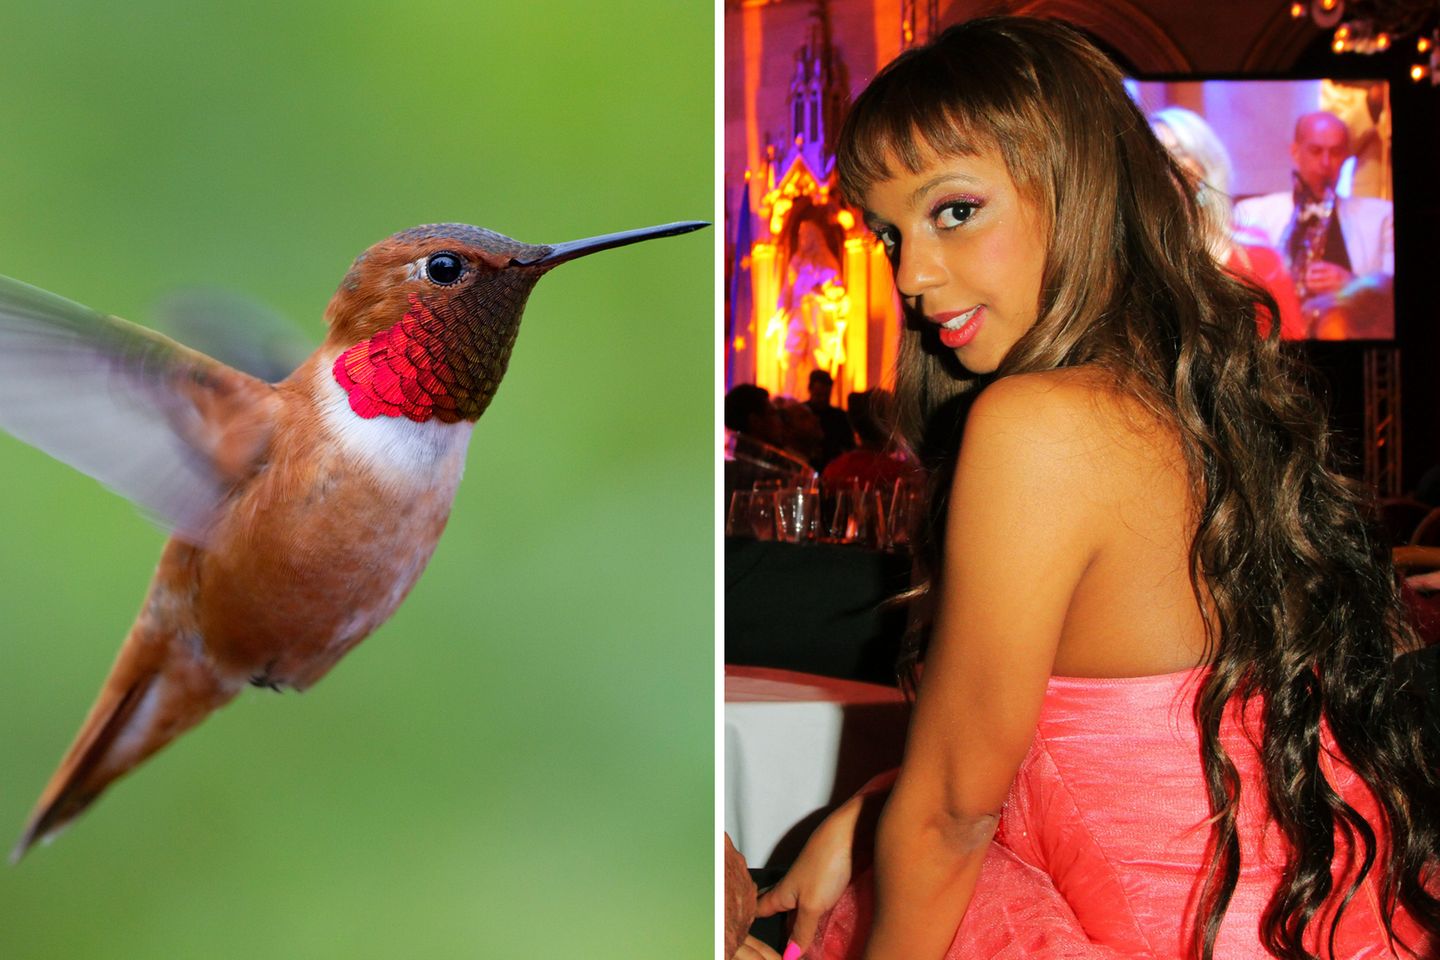 Kolibri  Für Bahati Venus ist denkt sich der Baulöwe den tierischen Spitznamen "Kolibri" aus. Sie flattert ihm nach knapp fünf Monaten davon.